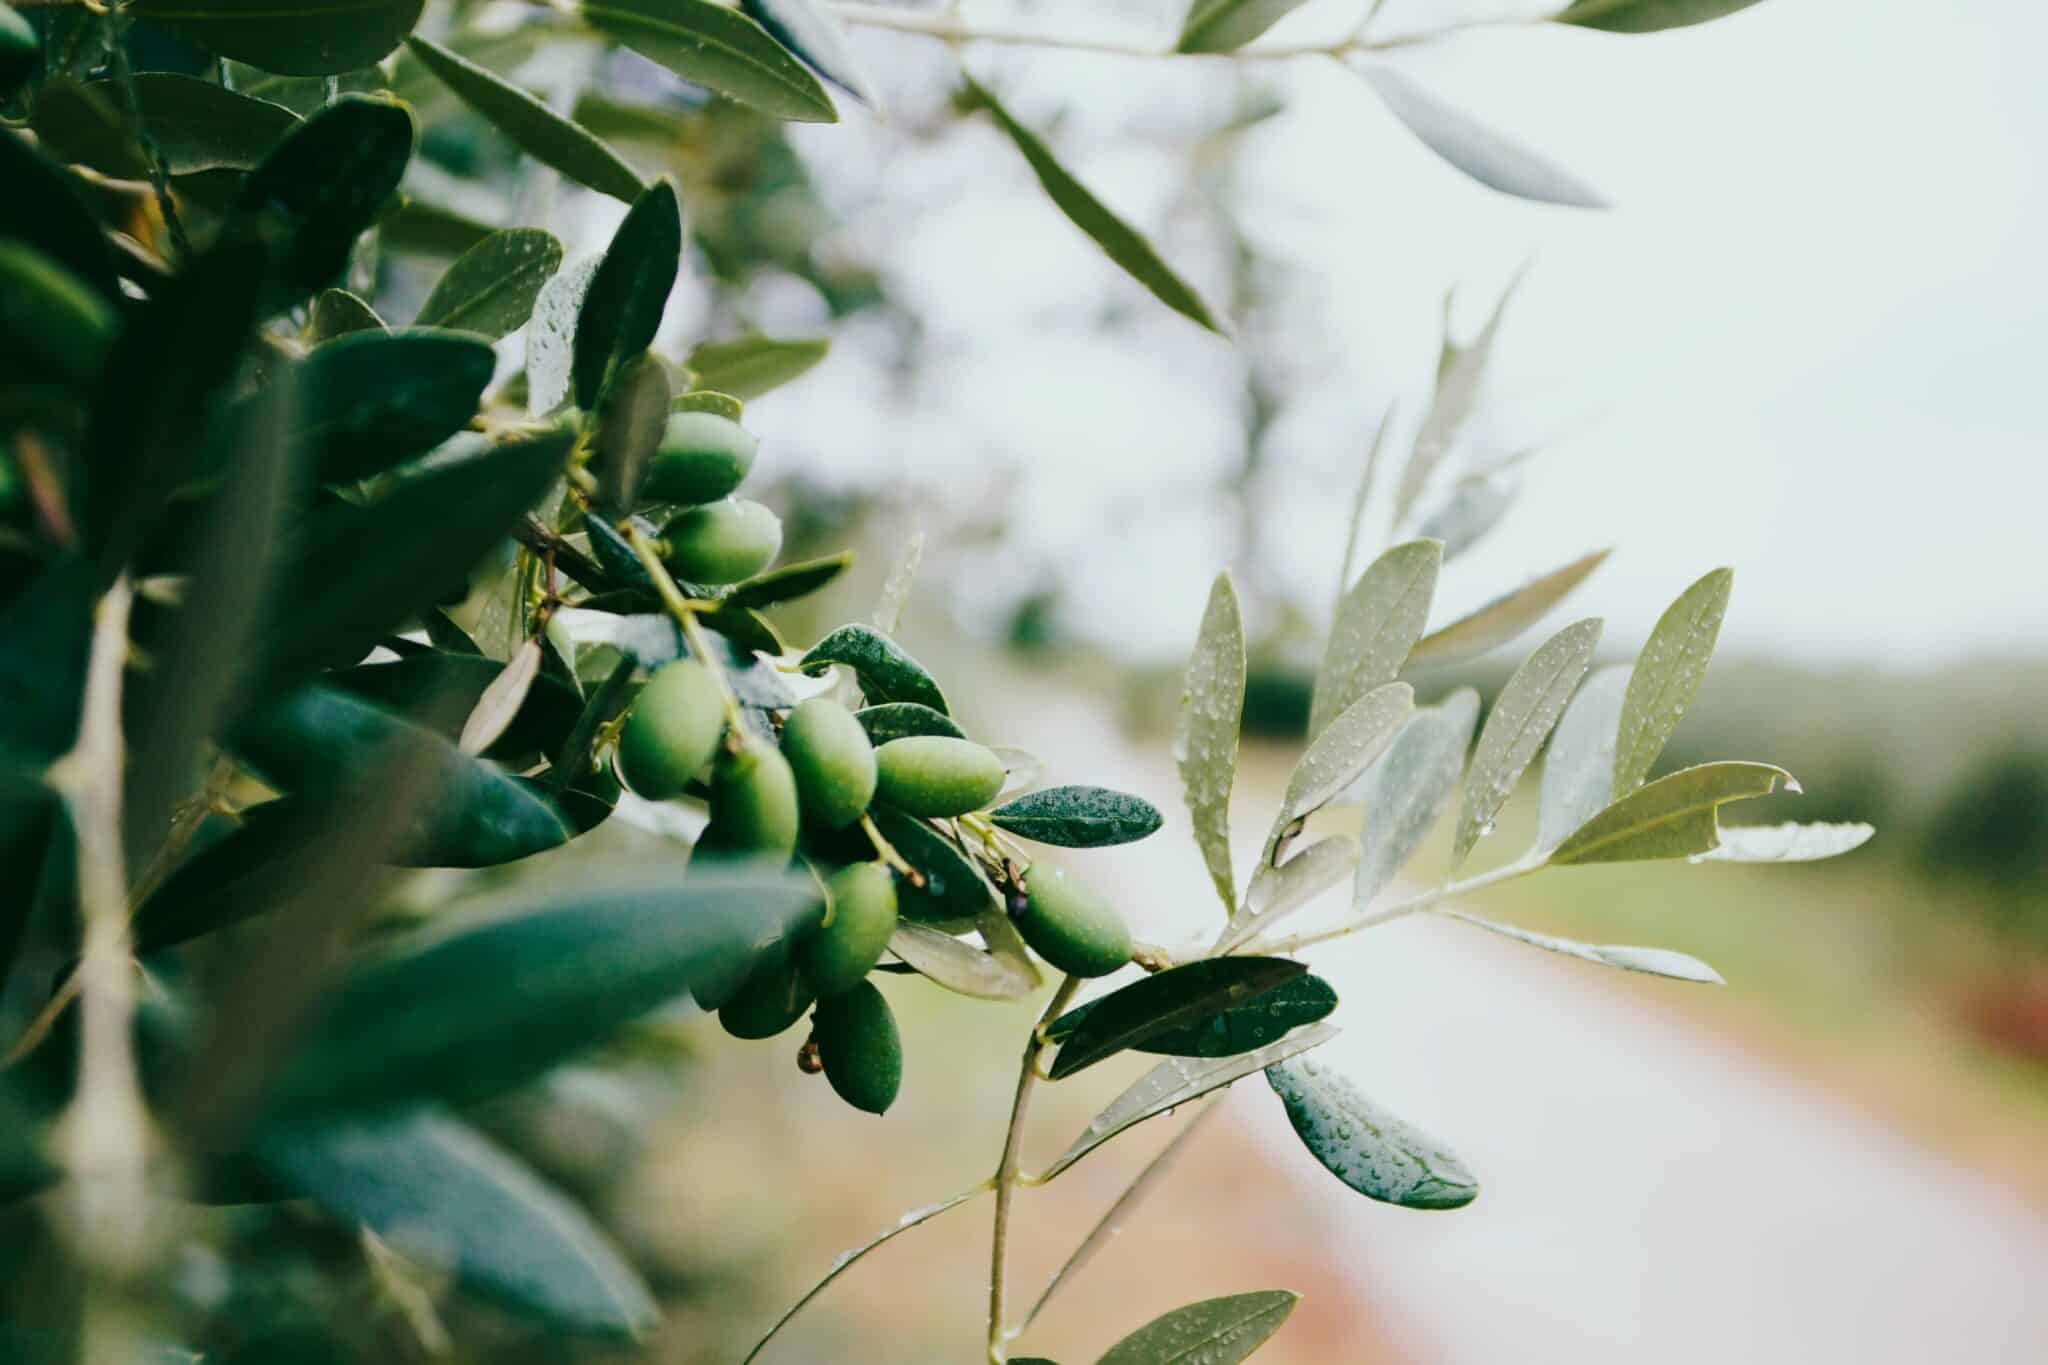 olive-tree-in-croatia-europeinstagram-at-nazarhrbv-stockpack-unsplash, Olive tree in Croatia, Europe.Instagram: @nazarhrbv